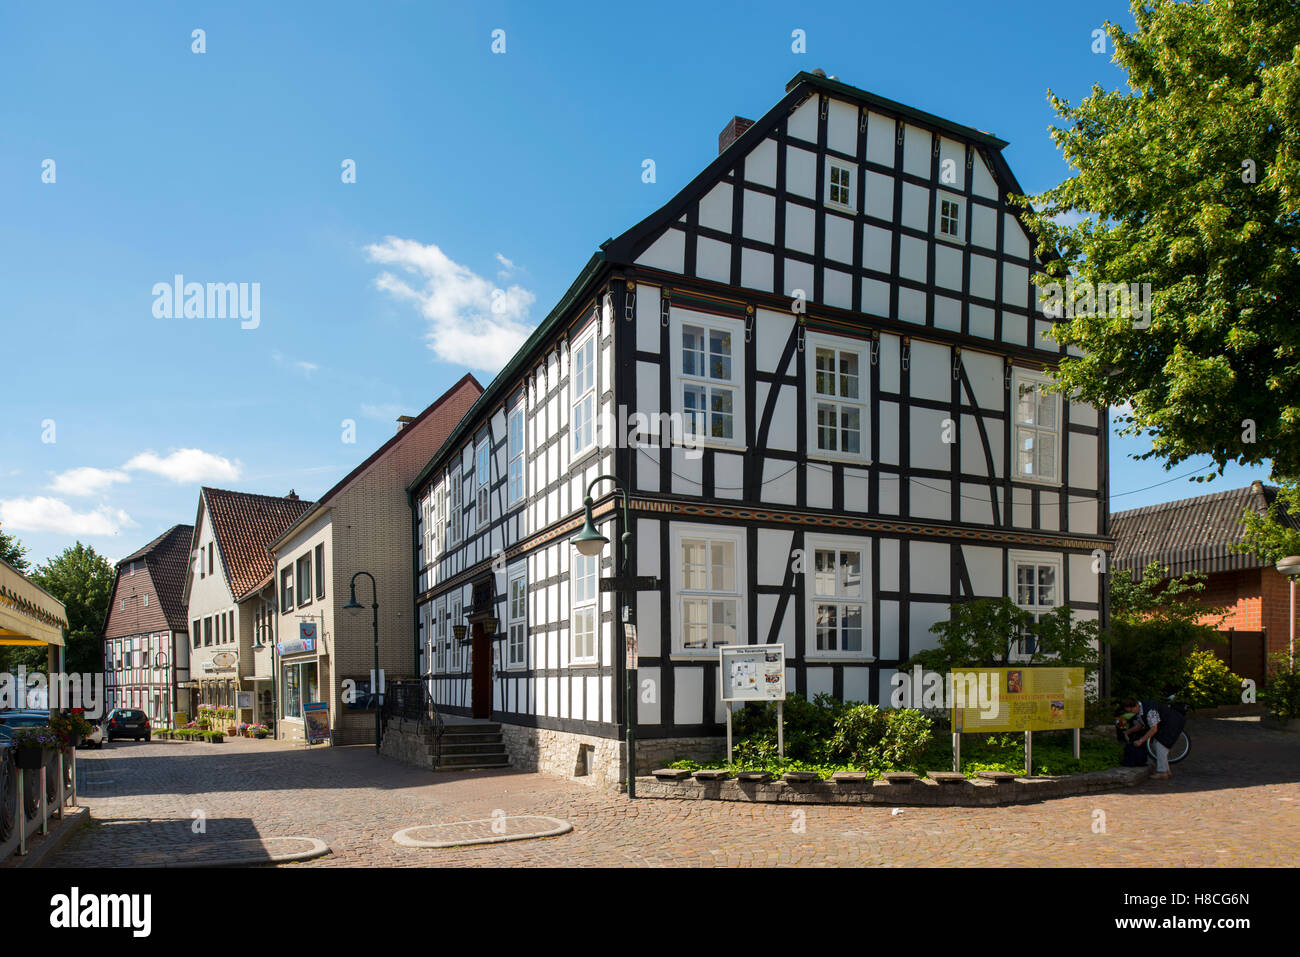 Deutschland, Nordrhein-Westfalen, Werther, Storck-Haus (Alte Bielefelder Straße 14), errichtet 1760, später von August Storck ge Stock Photo